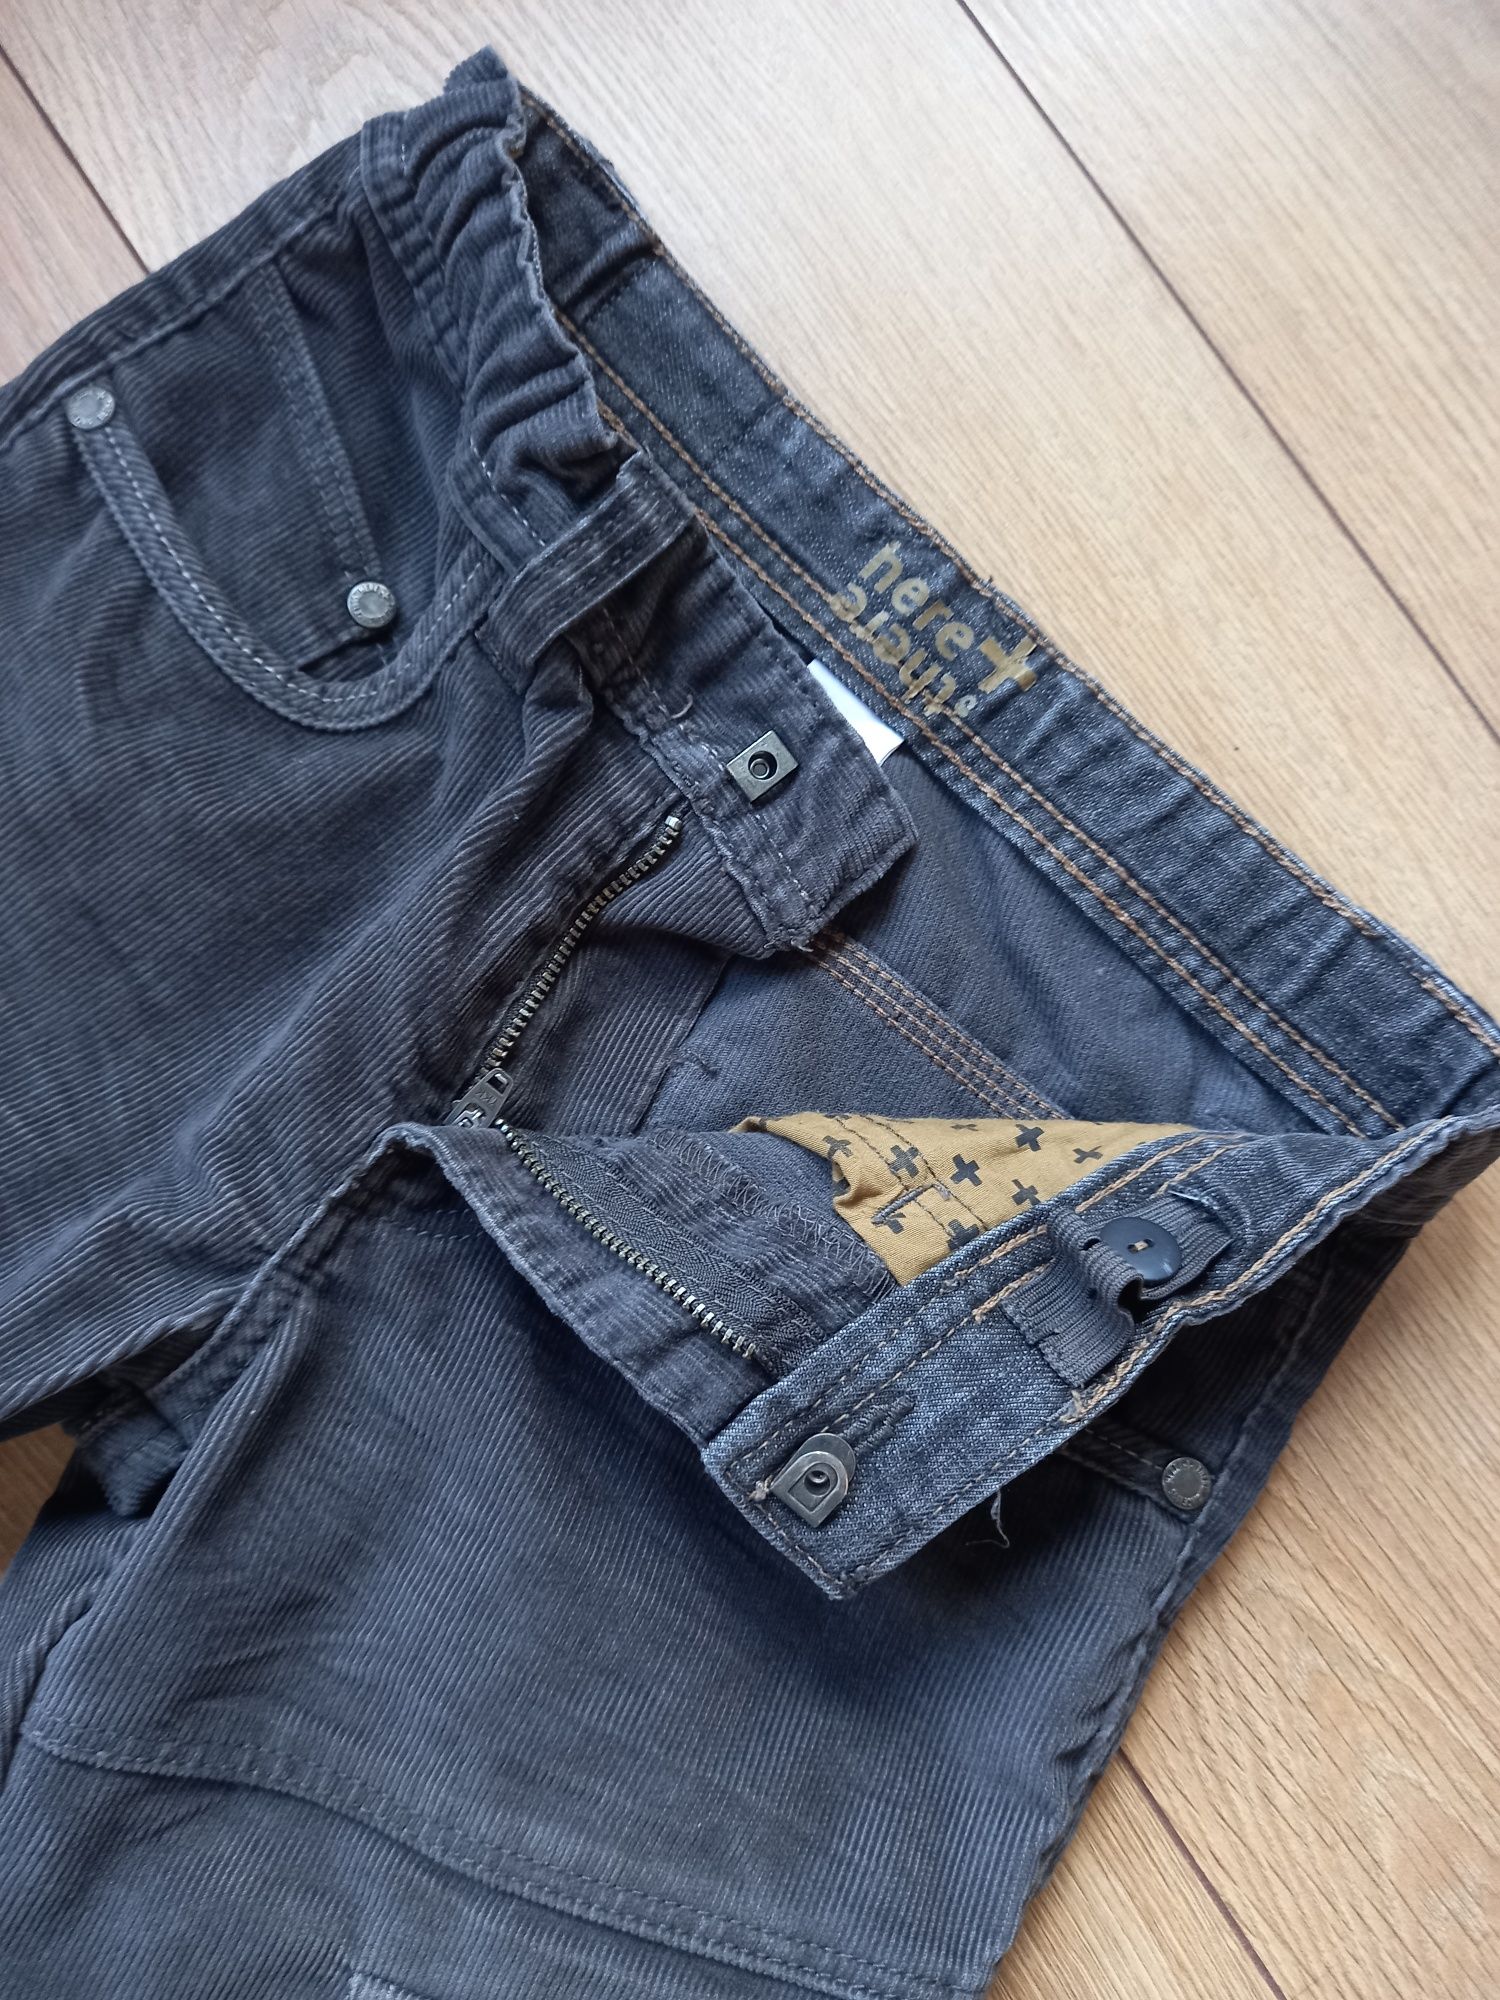 Spodnie bojówki na szczupłego, C&A, r.134, szare, sztruksowe